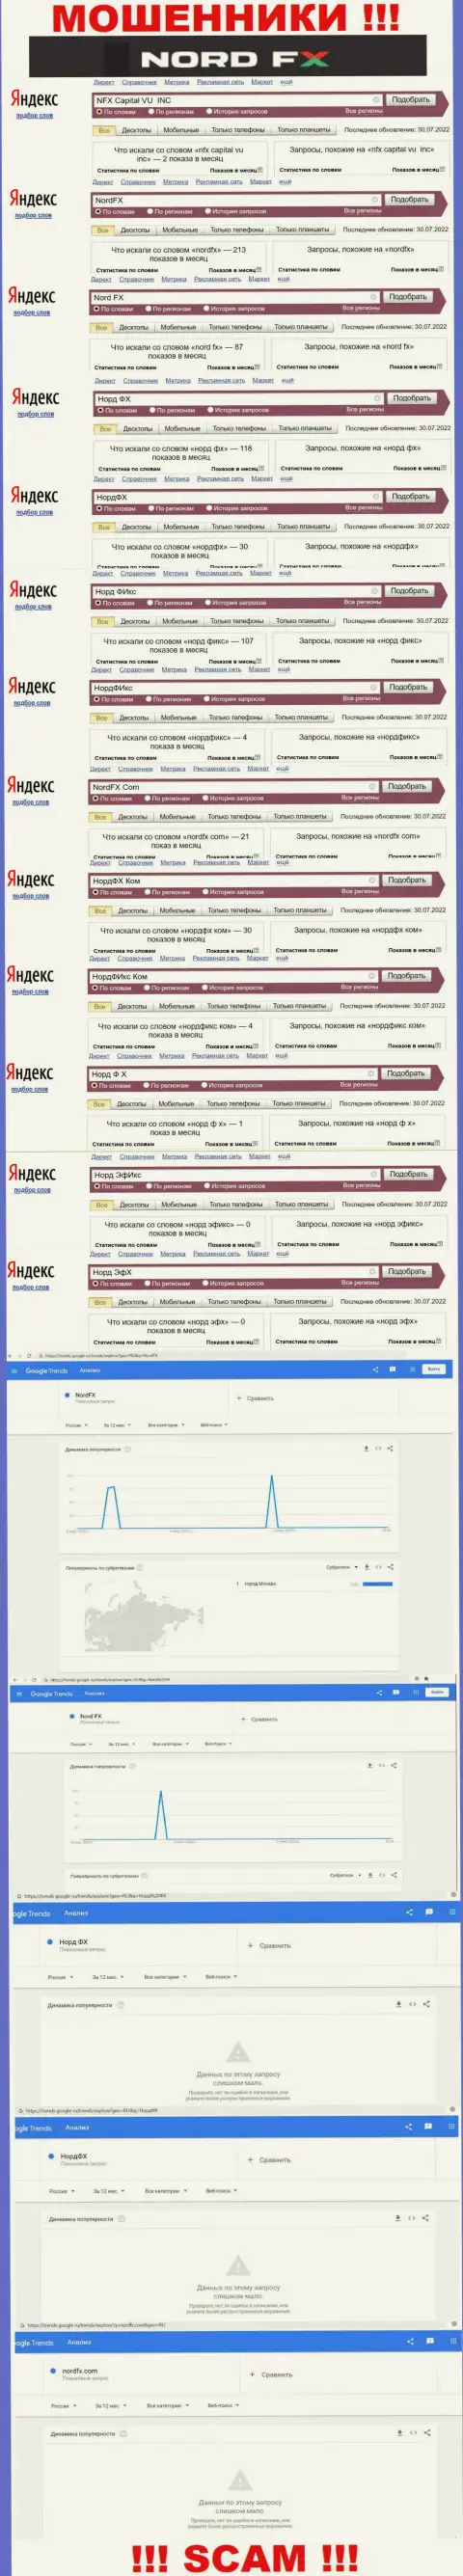 Количество онлайн-запросов в поисковиках сети Интернет по бренду жуликов NordFX